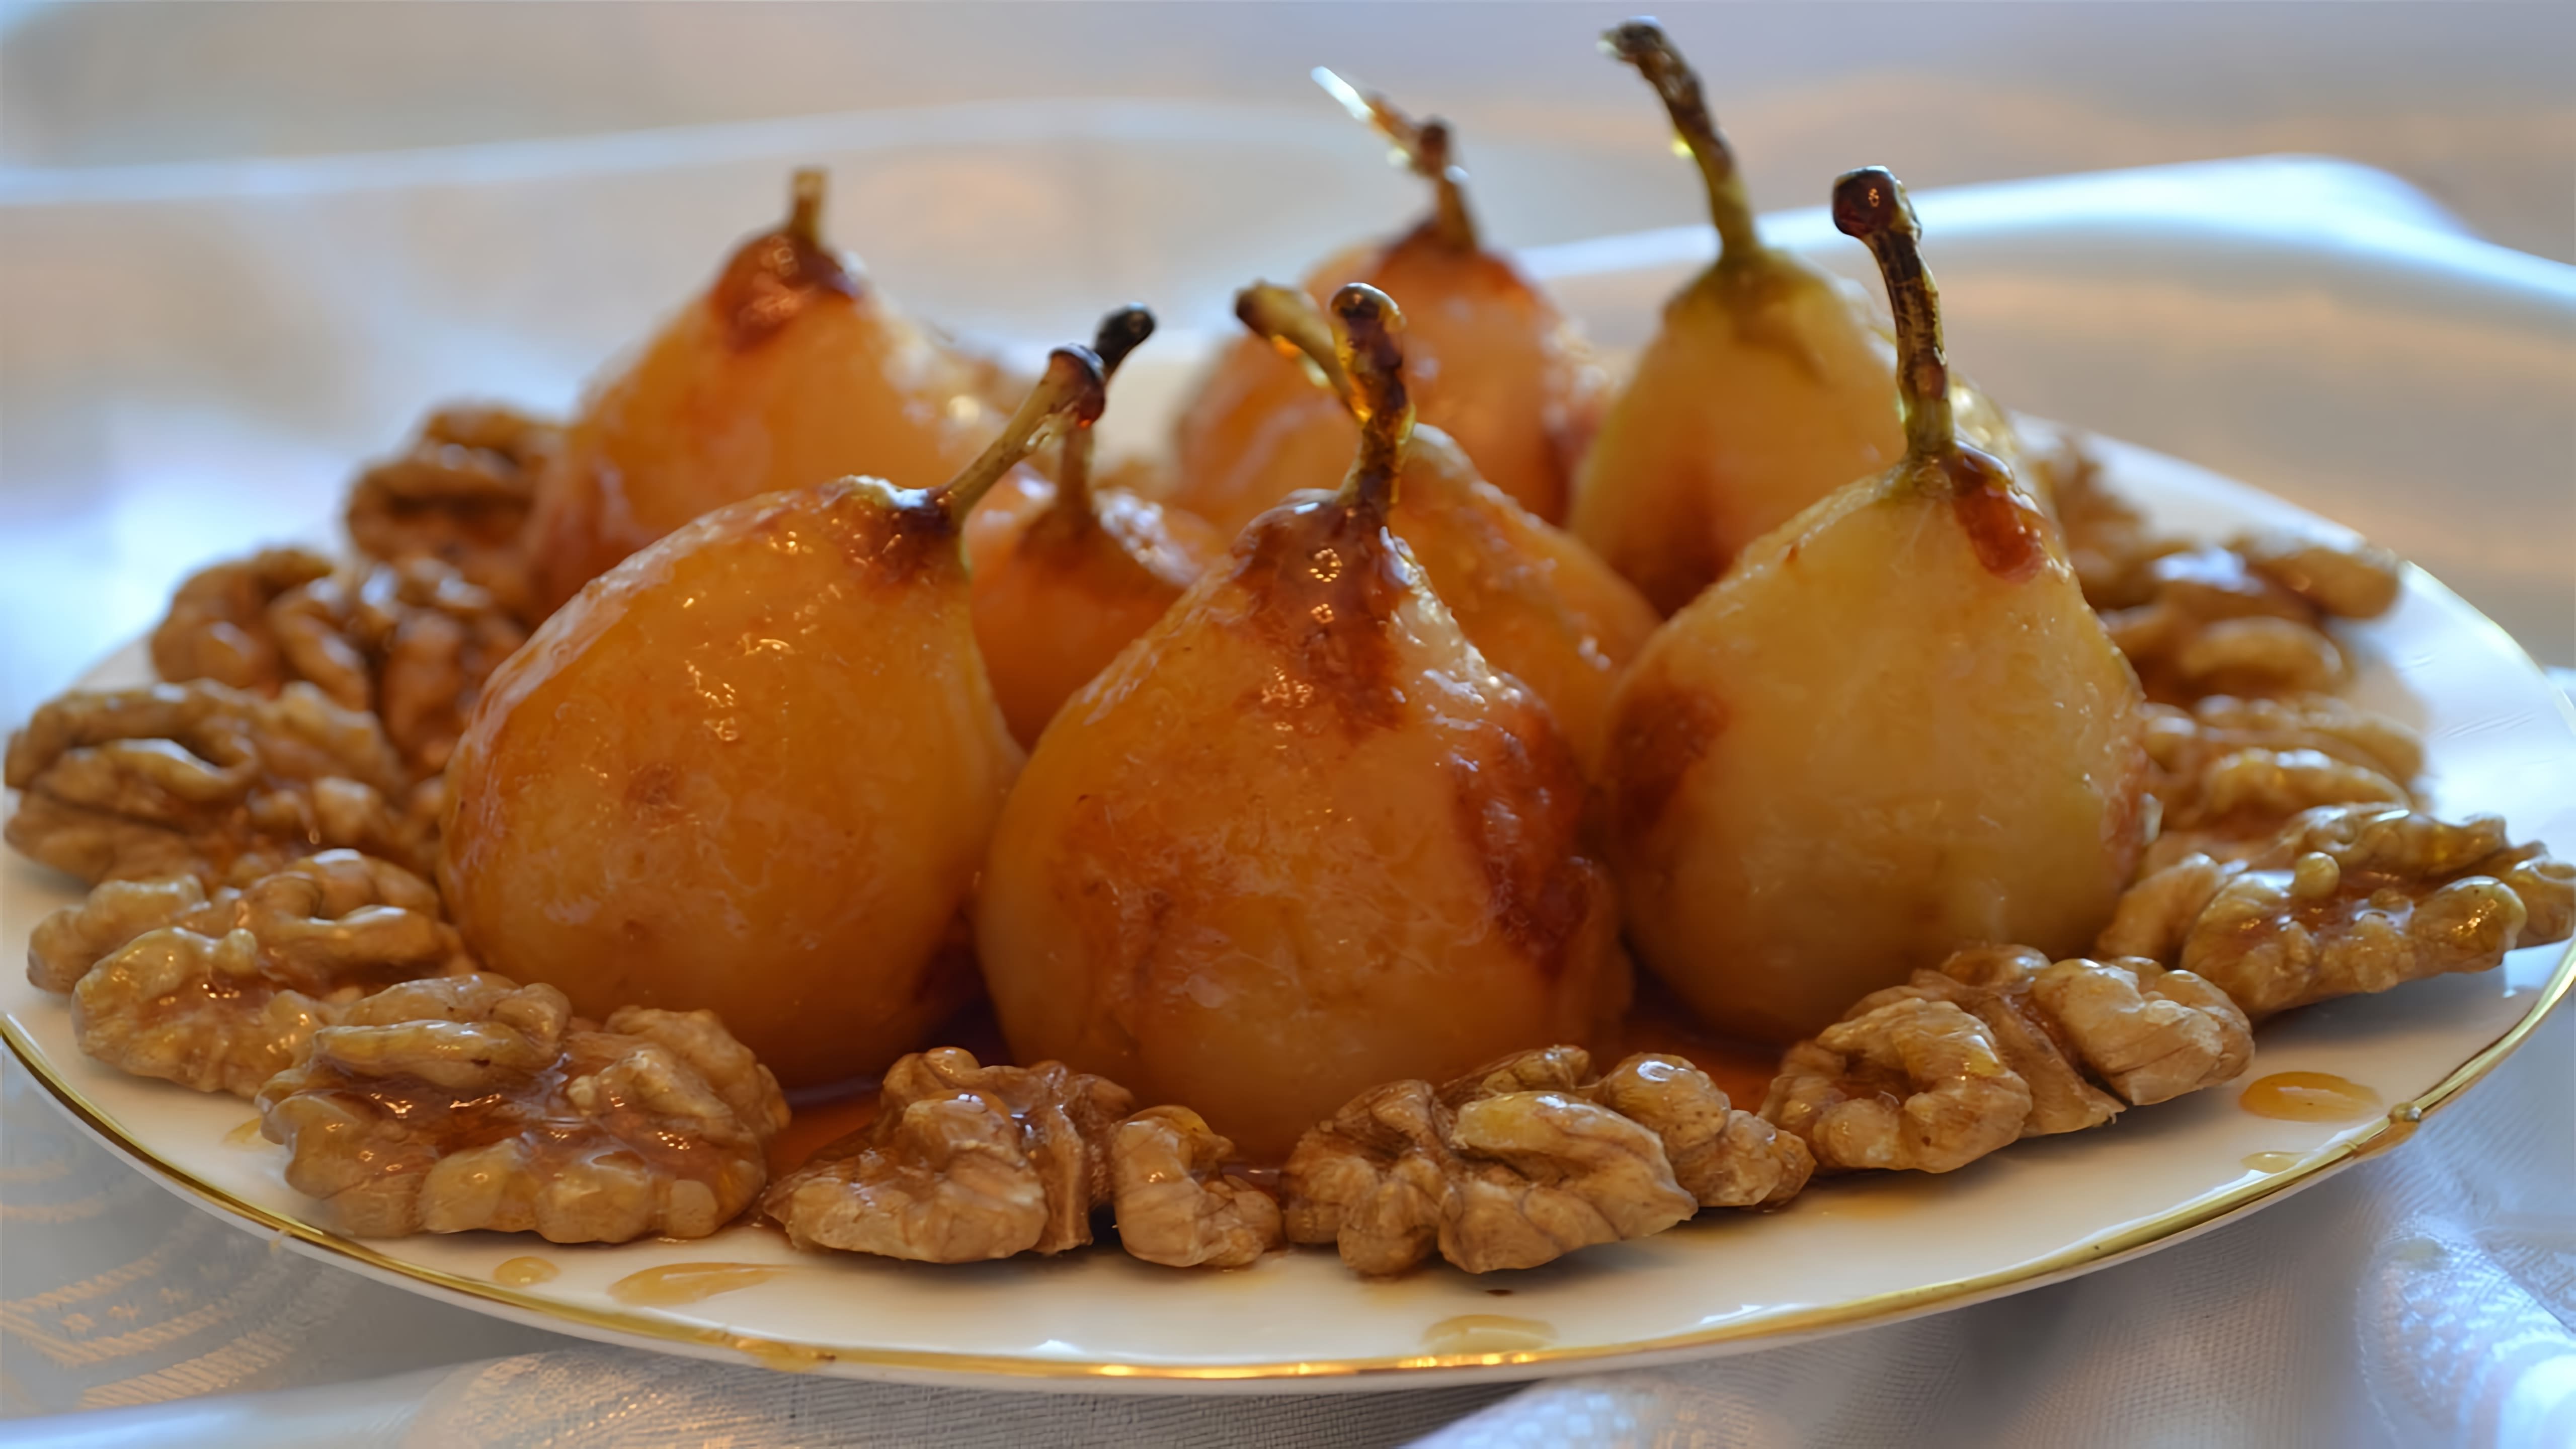 В этом видео демонстрируется рецепт приготовления десерта из груш в карамели с орехами